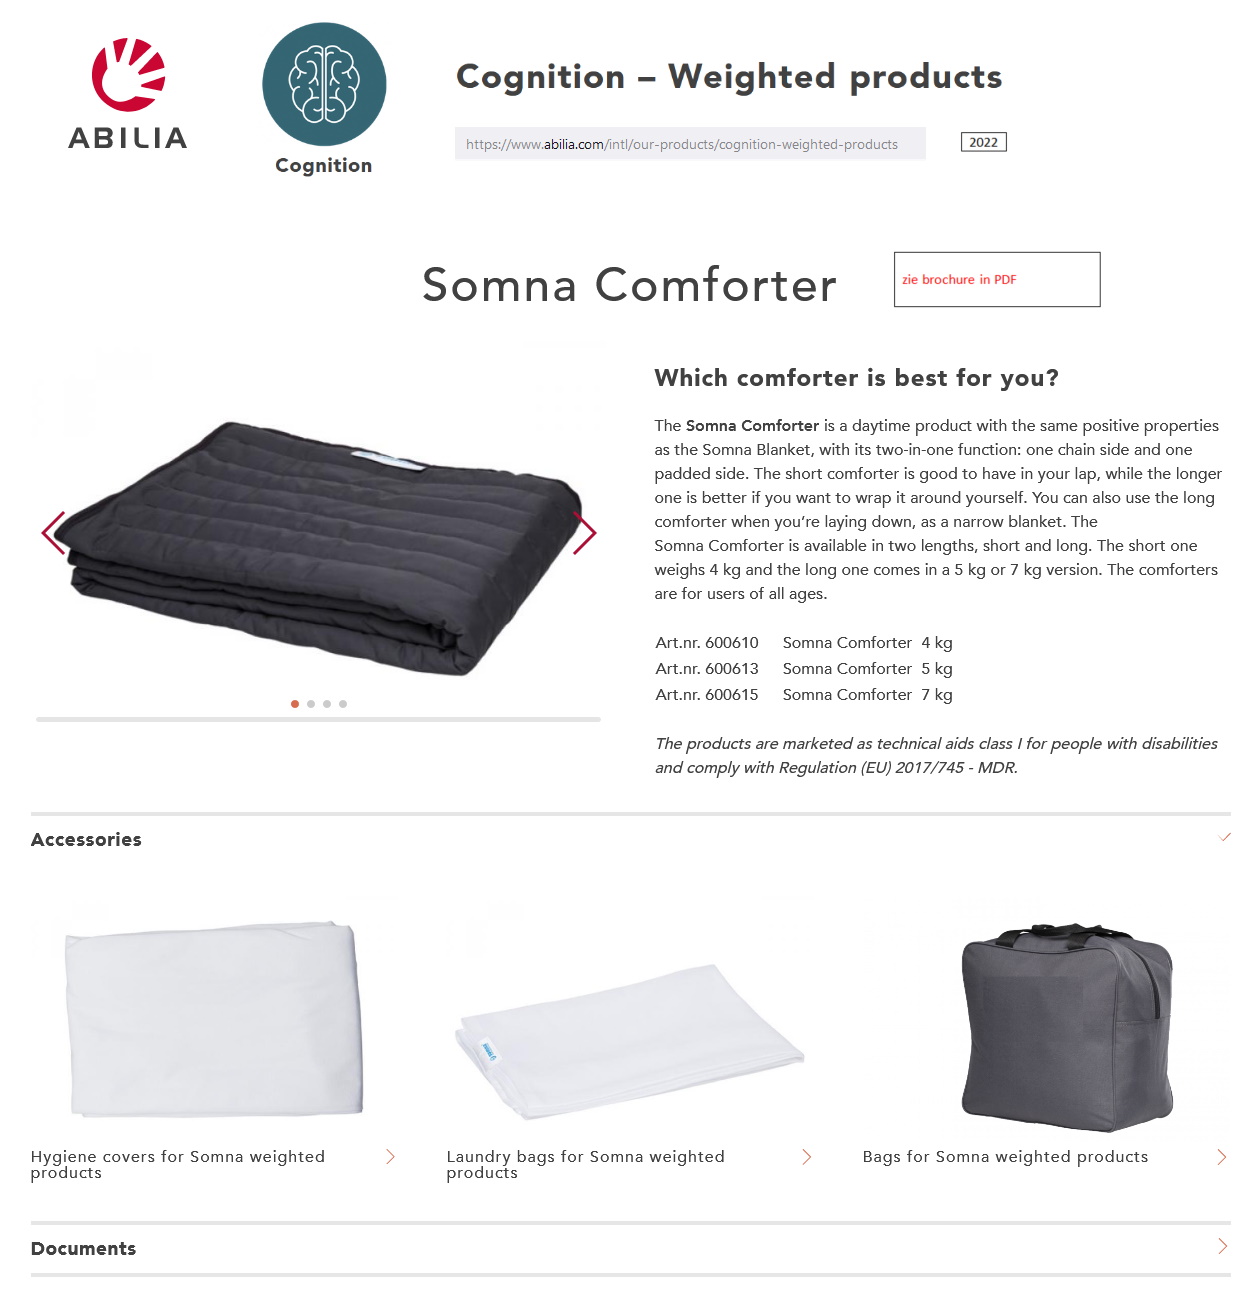 toegevoegd document 2 van Somna Comforter verzwaringsdeken overdag  